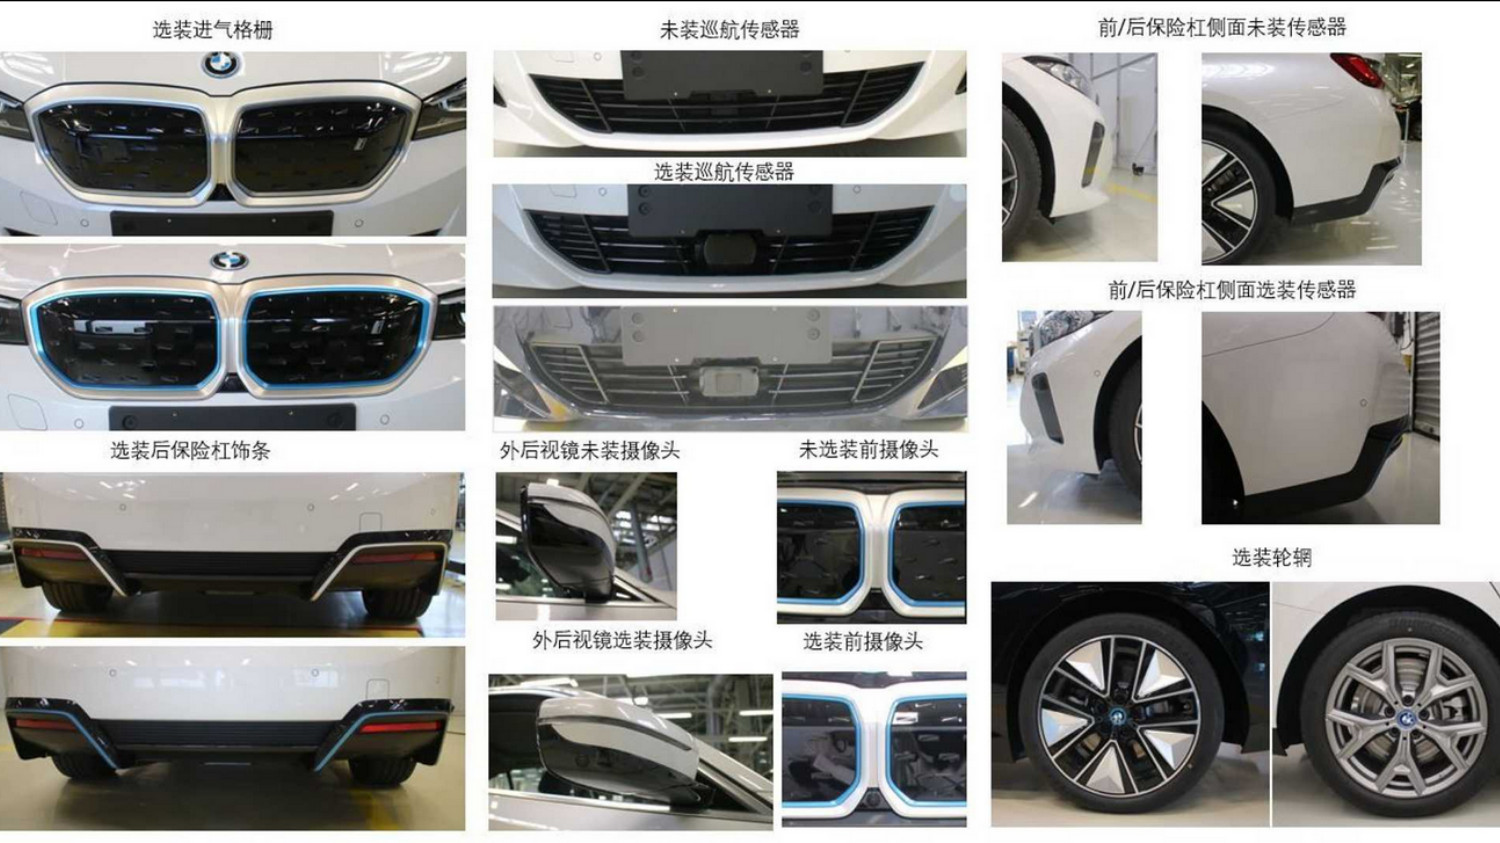 Os vários pormenores e opcionais disponíveis no novo BMW i3 chinês